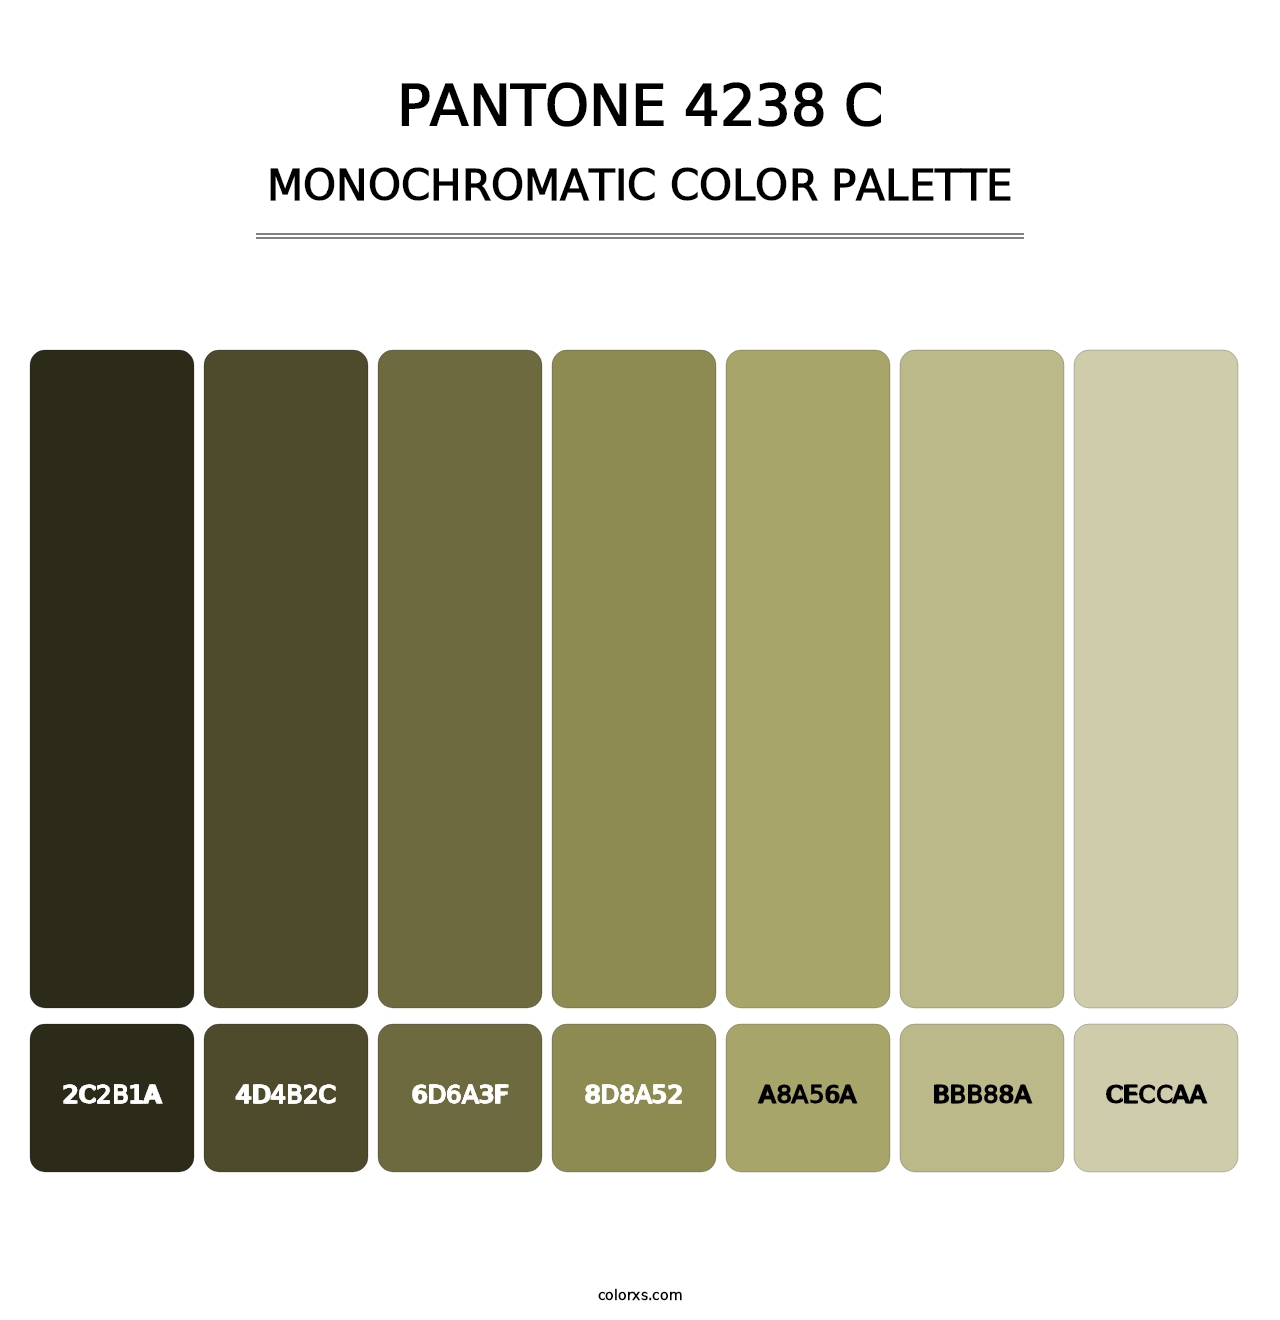 PANTONE 4238 C - Monochromatic Color Palette